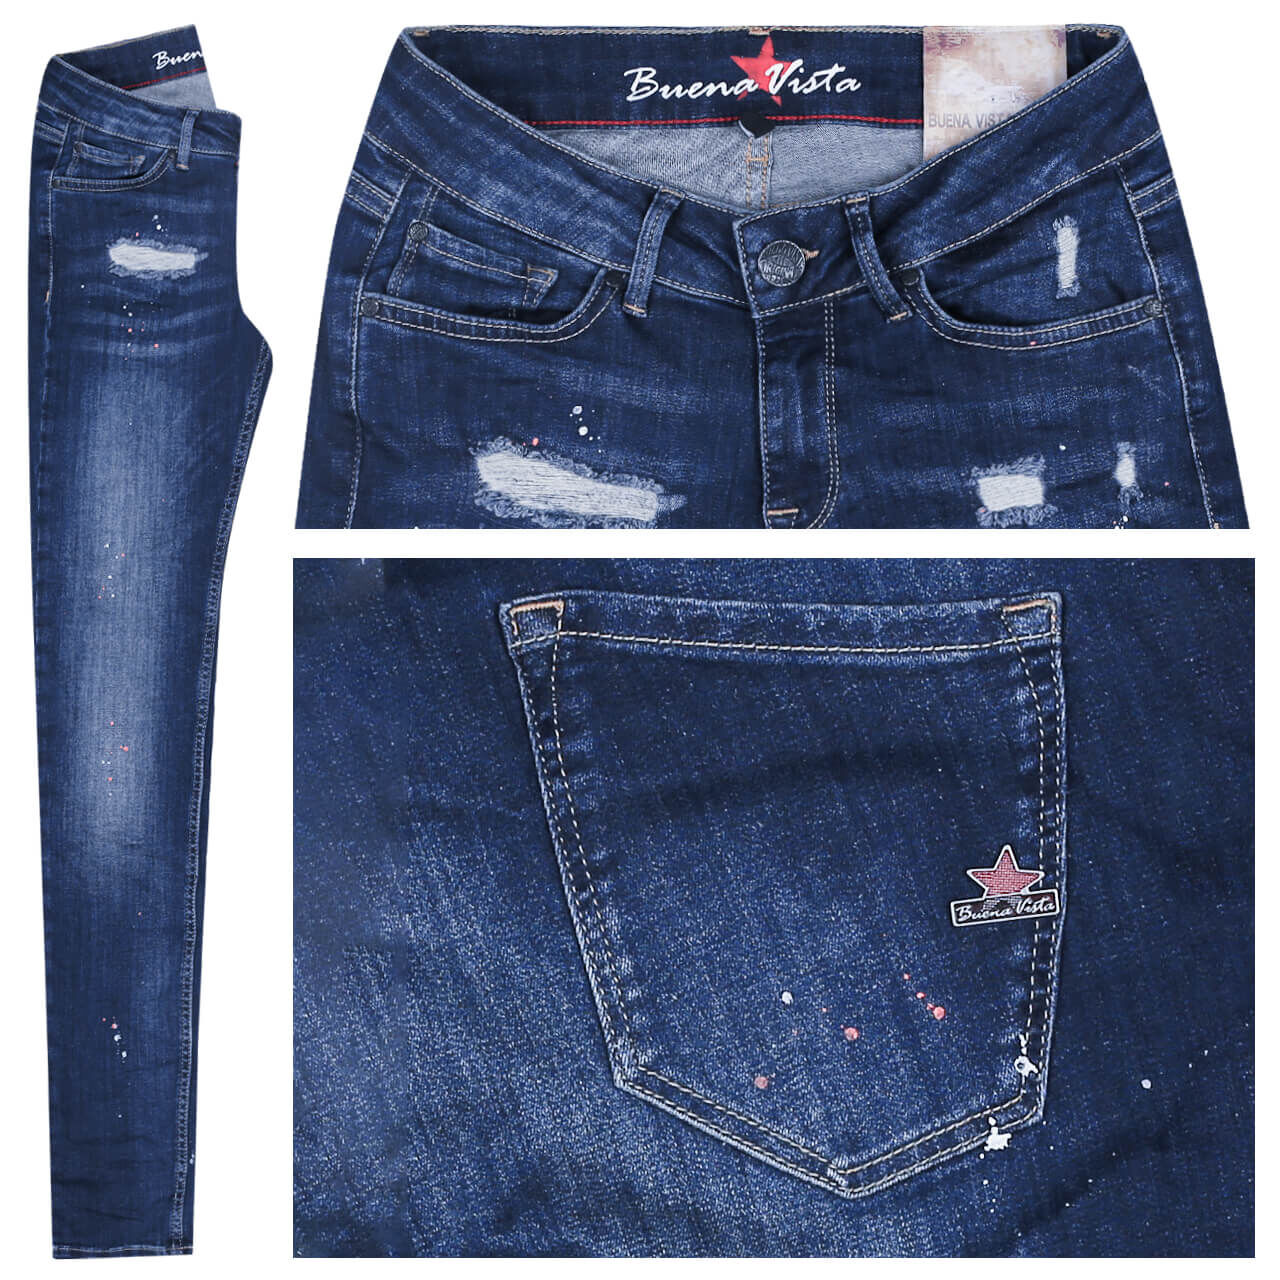 Buena Vista Jeans Italy Stretch Denim für Damen in Dunkelblau angewaschen mit Destroyed-Effekten und Painted-Effekt, FarbNr.: 2575